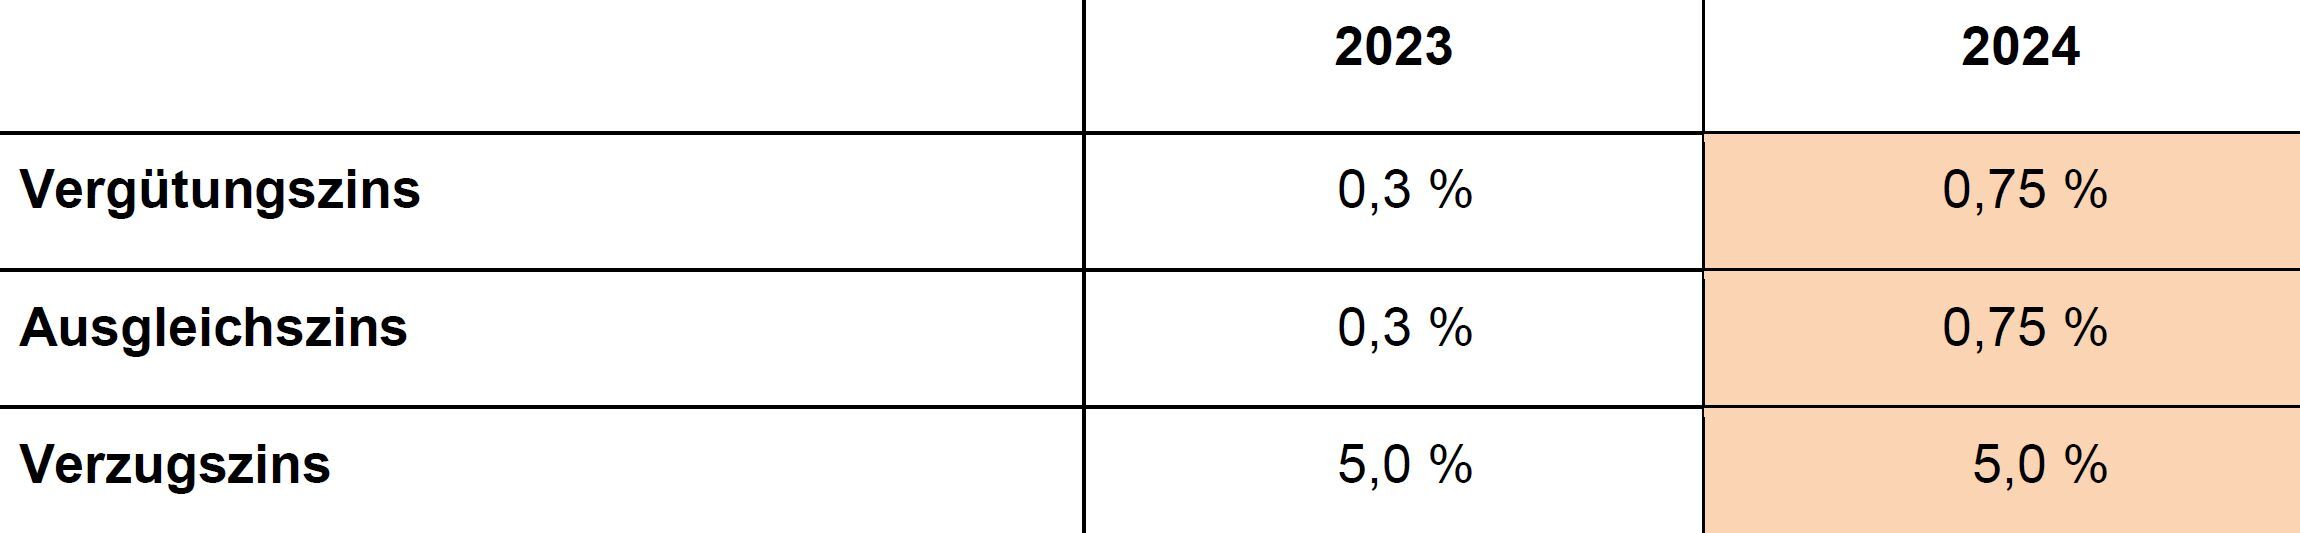 Steuerperiode 2024: Übersicht Vergütungs-, Ausgleichs- und Verzugszinsen 2024 im Vergleich zu 2023